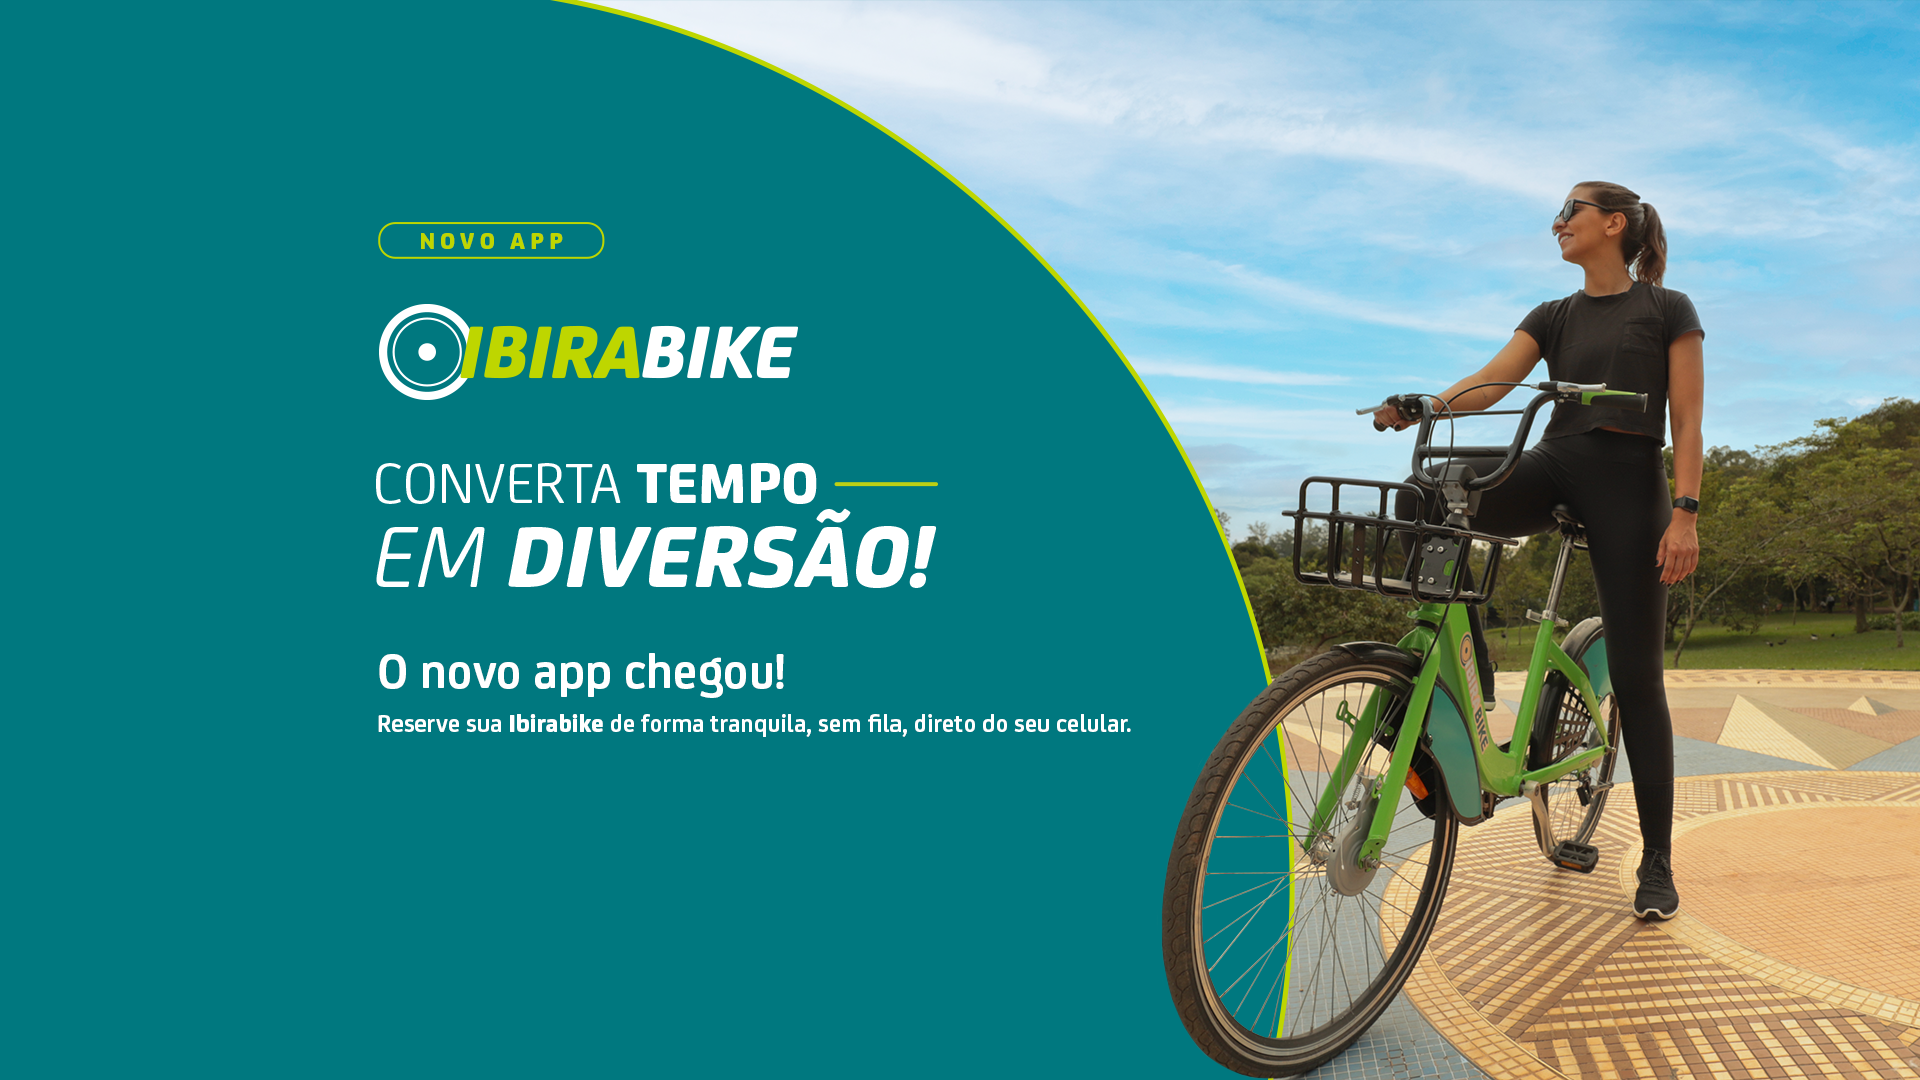 Urbia lança aplicativo ‘Ibirabike’ com campanha ‘Converta tempo em diversão’